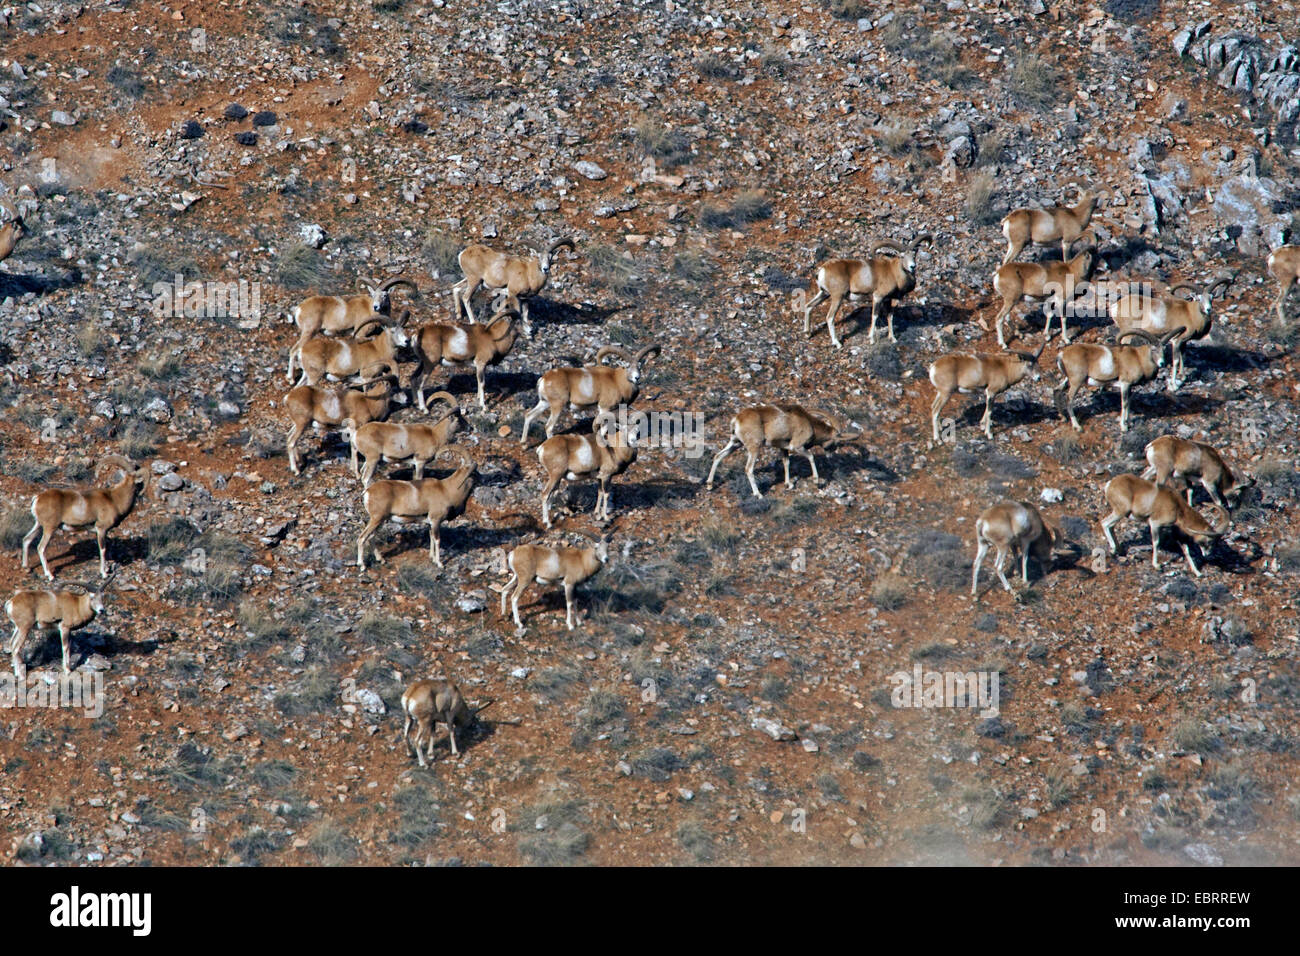 Konya Mouflon, Turkish Mouflon (Ovis gmelini anatolica, Ovis ammon anatolica), flock of rams, Turkey Stock Photo